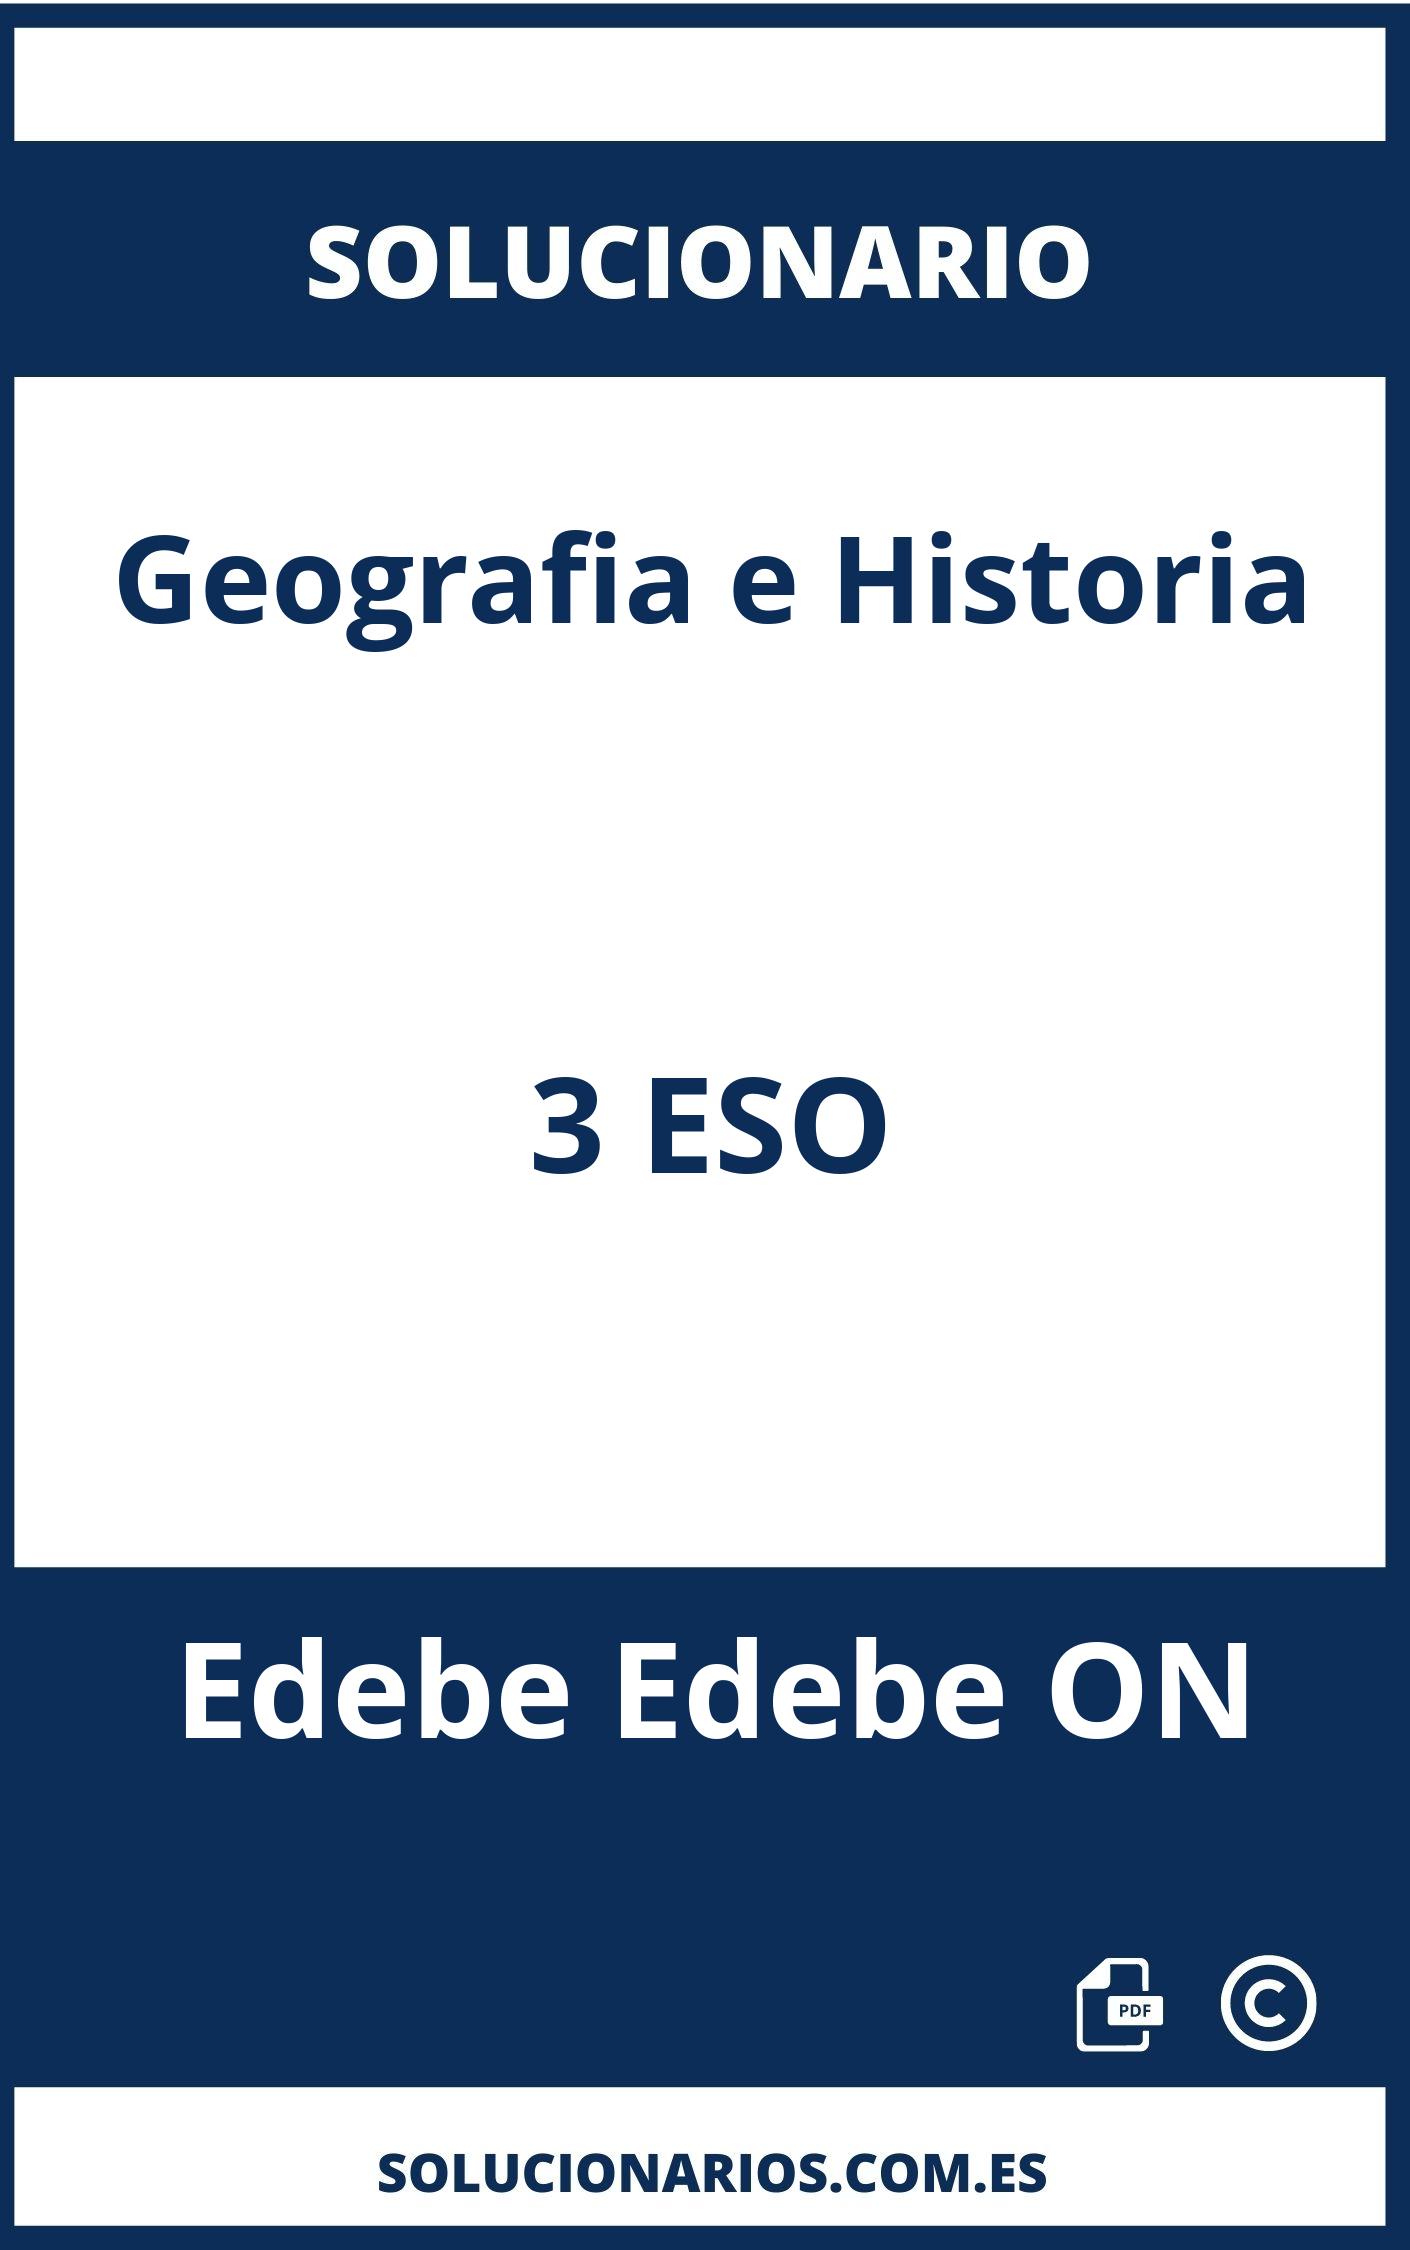 Solucionario Geografia e Historia 3 ESO Edebe Edebe ON